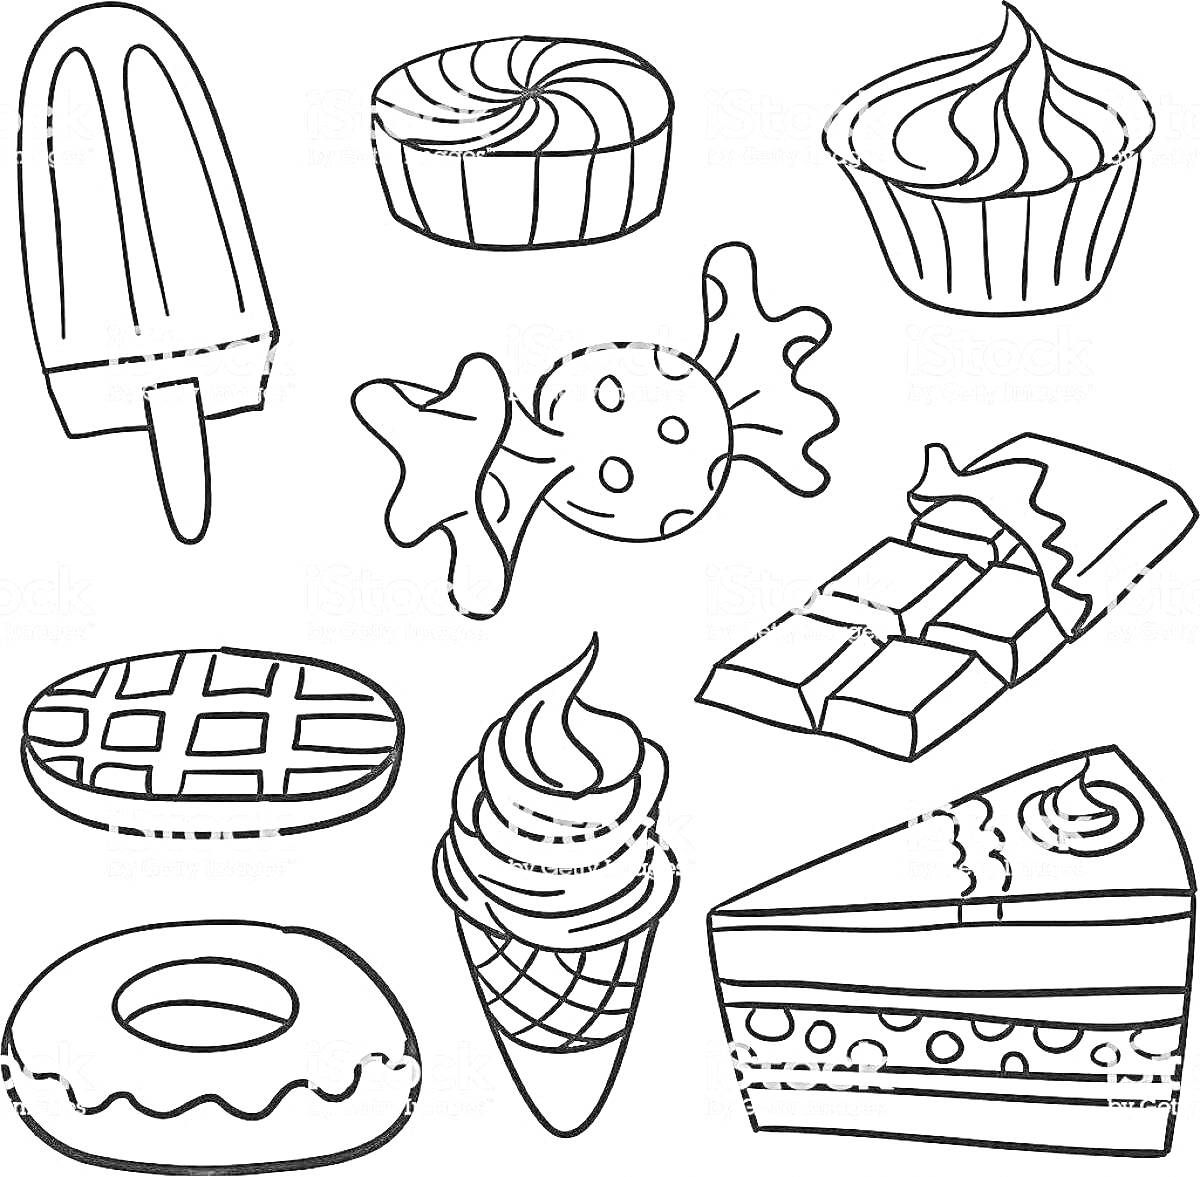 Леденец на палочке, кекс, капкейк, конфета, шоколадный батончик, вафля, мороженое в рожке, пончик, кусок торта